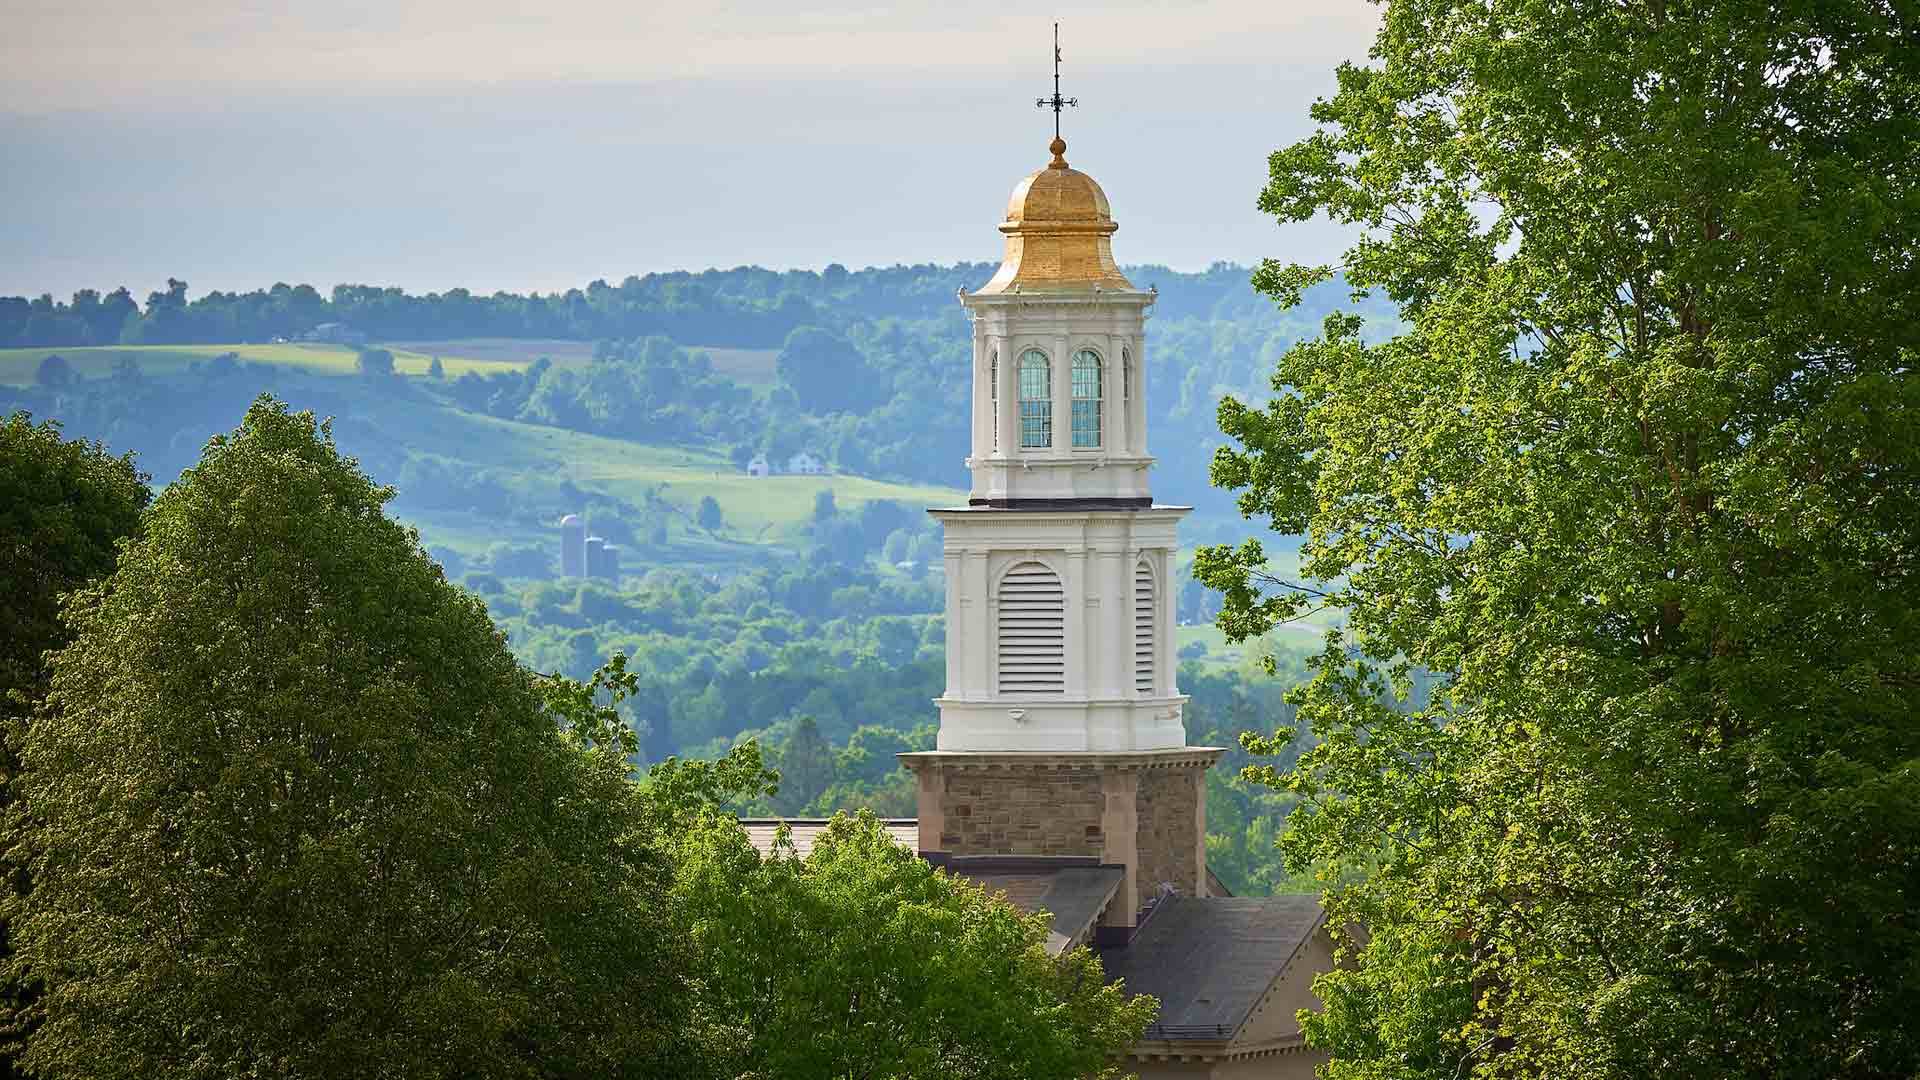 鶹 University Memorial Chapel rises above the trees.